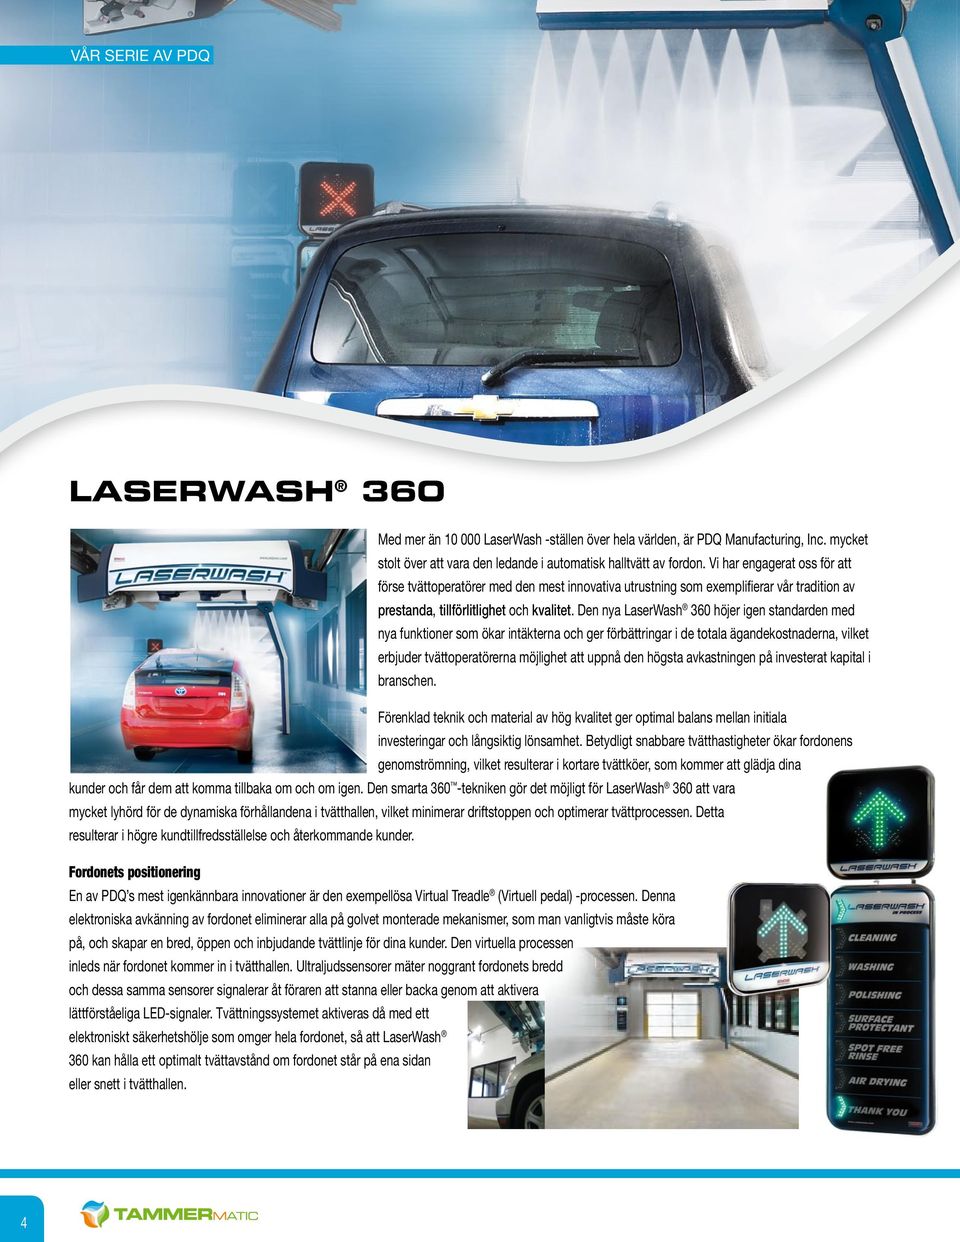 Den nya LaserWash 360 höjer igen standarden med nya funktioner som ökar intäkterna och ger förbättringar i de totala ägandekostnaderna, vilket erbjuder tvättoperatörerna möjlighet att uppnå den